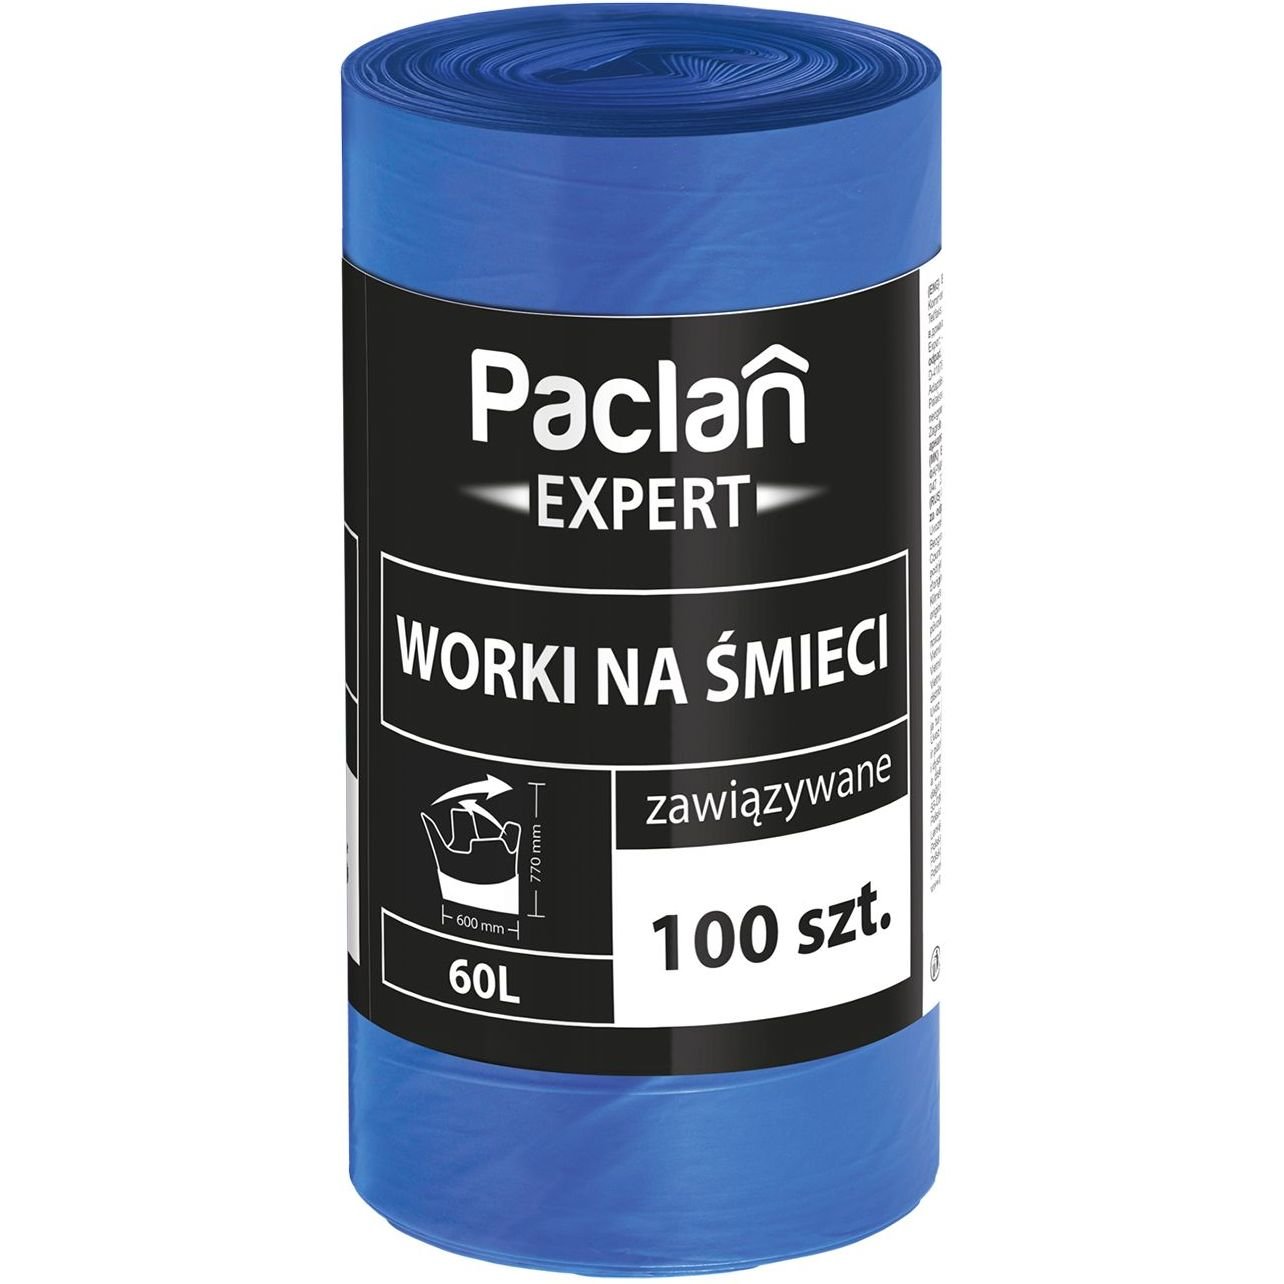 Пакеты для мусора Paclan Expert MultiTop, 60 л, 100 шт. - фото 1